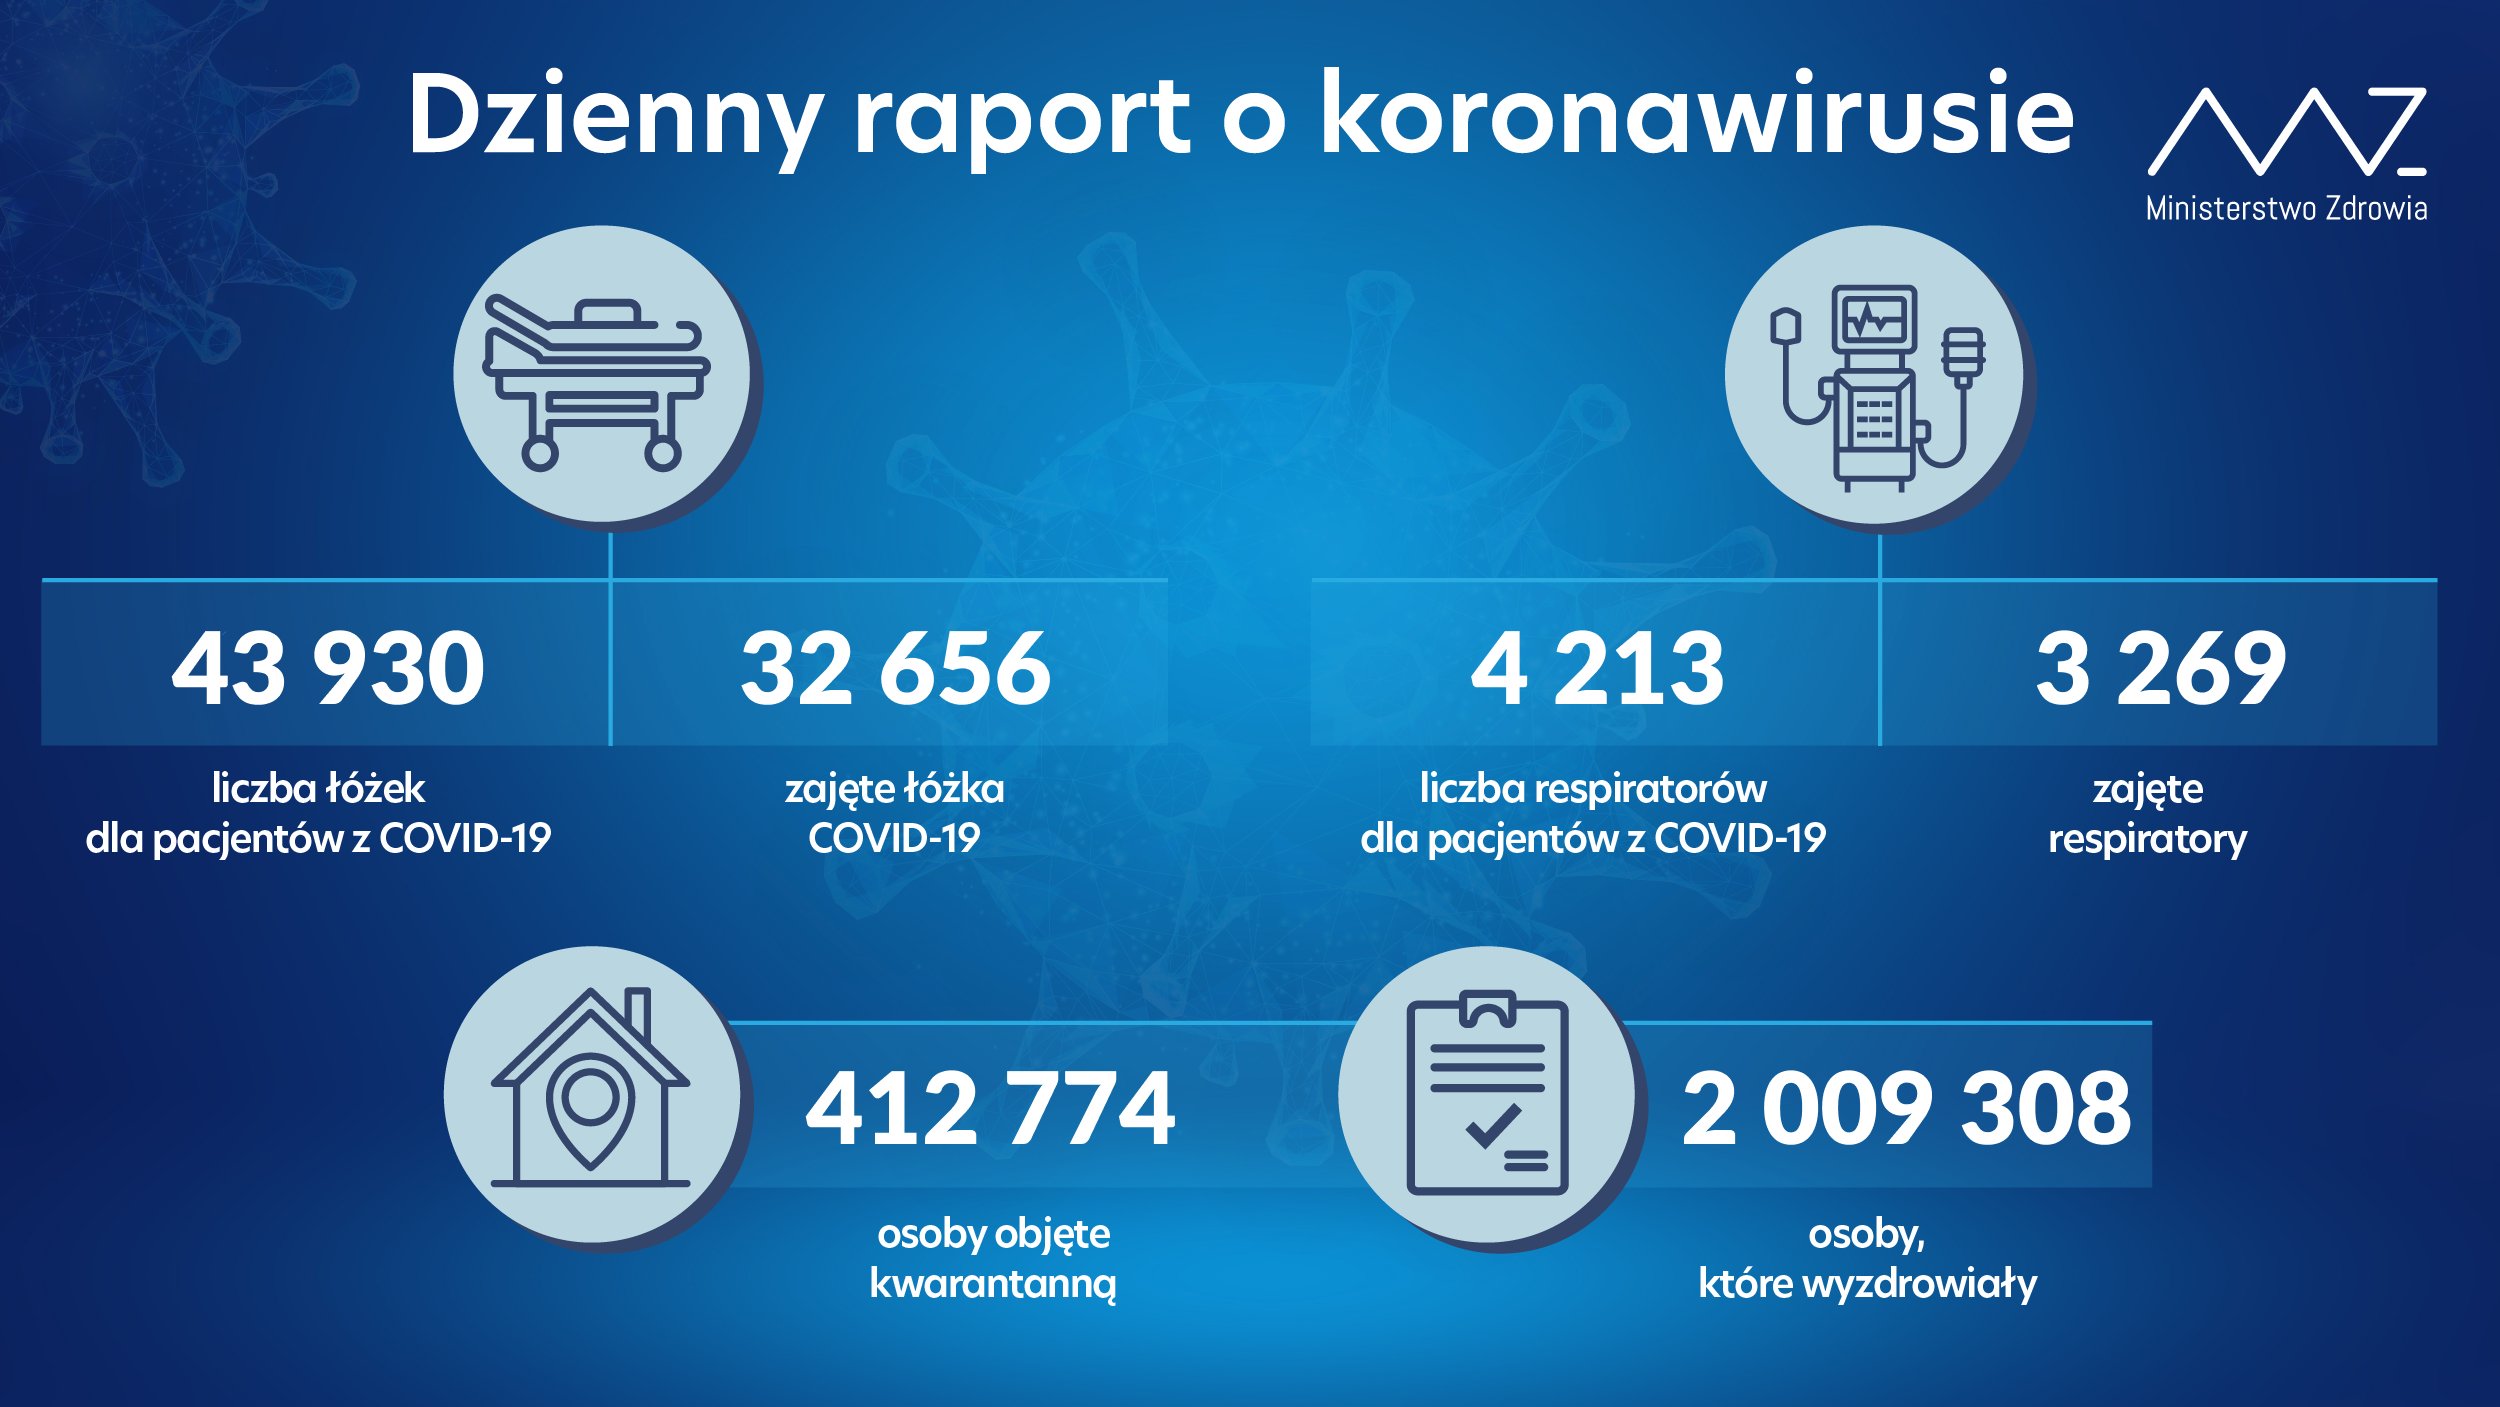 Niespełna 10 tys. nowych zakażeń koronawirusem w kraju, 237 w woj. lubelskim